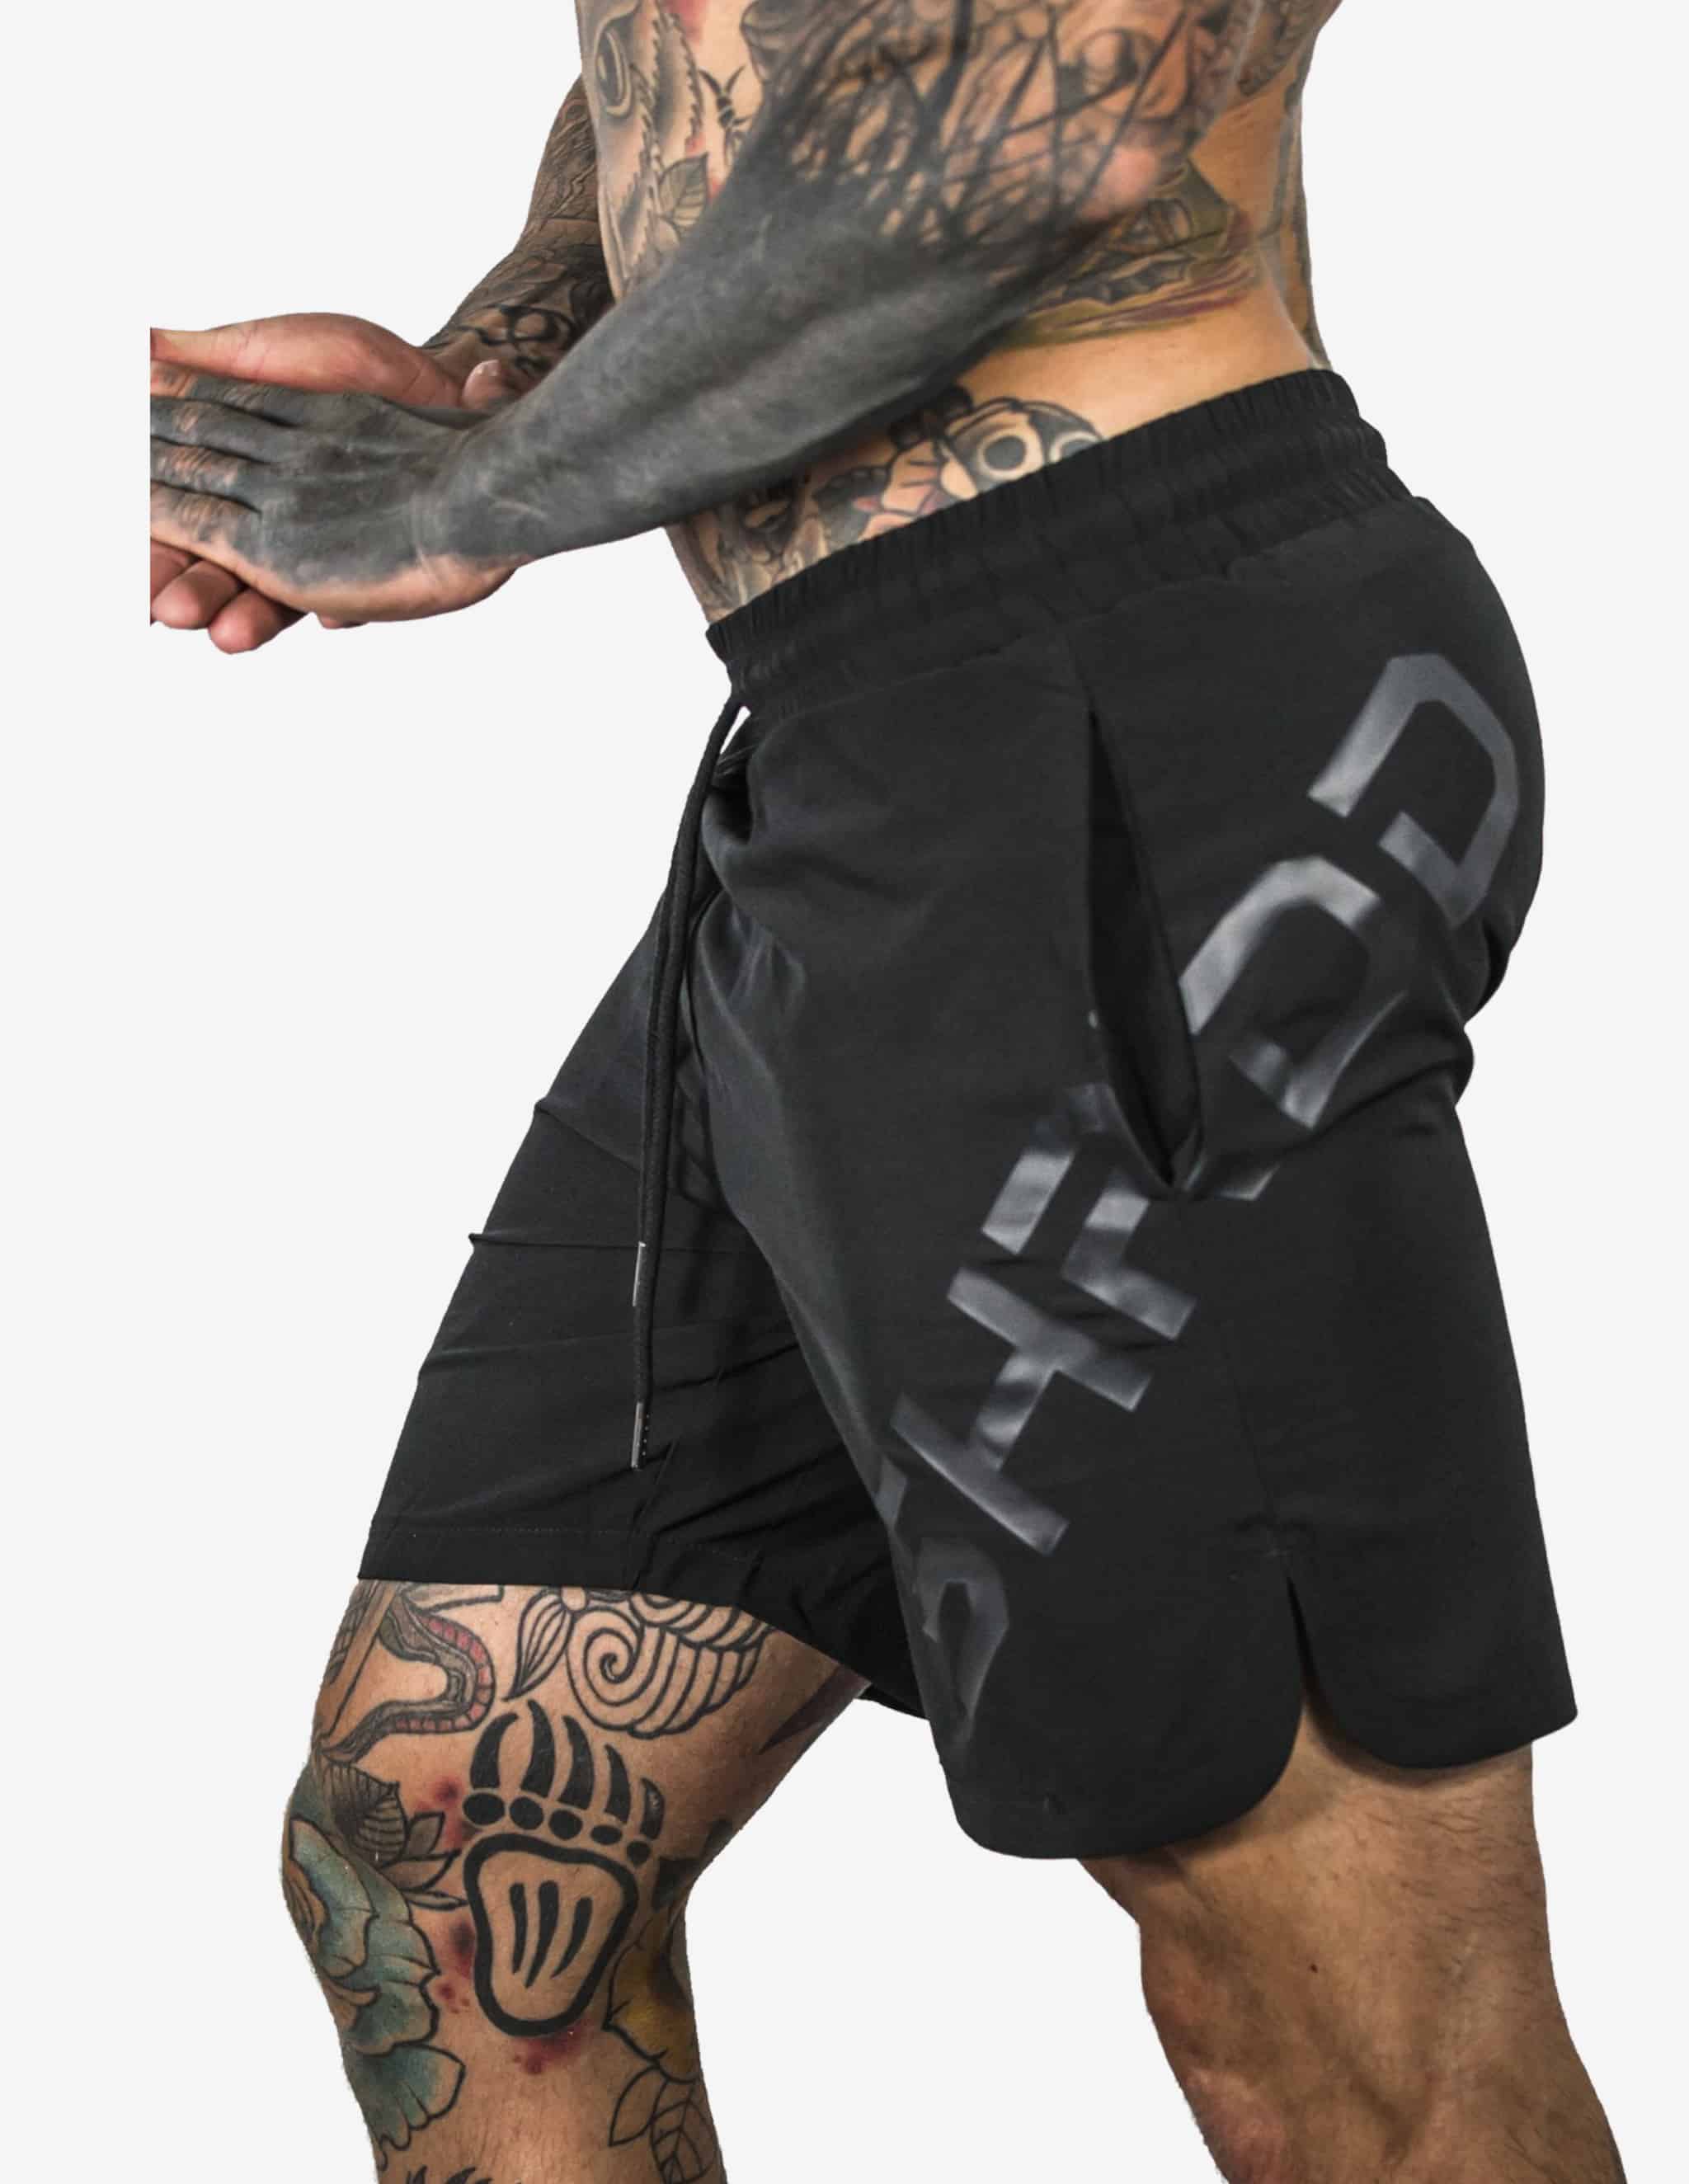 SHRDD Shorts Stealth Black-Shorts Man-Stay Shredded-Guru Muscle